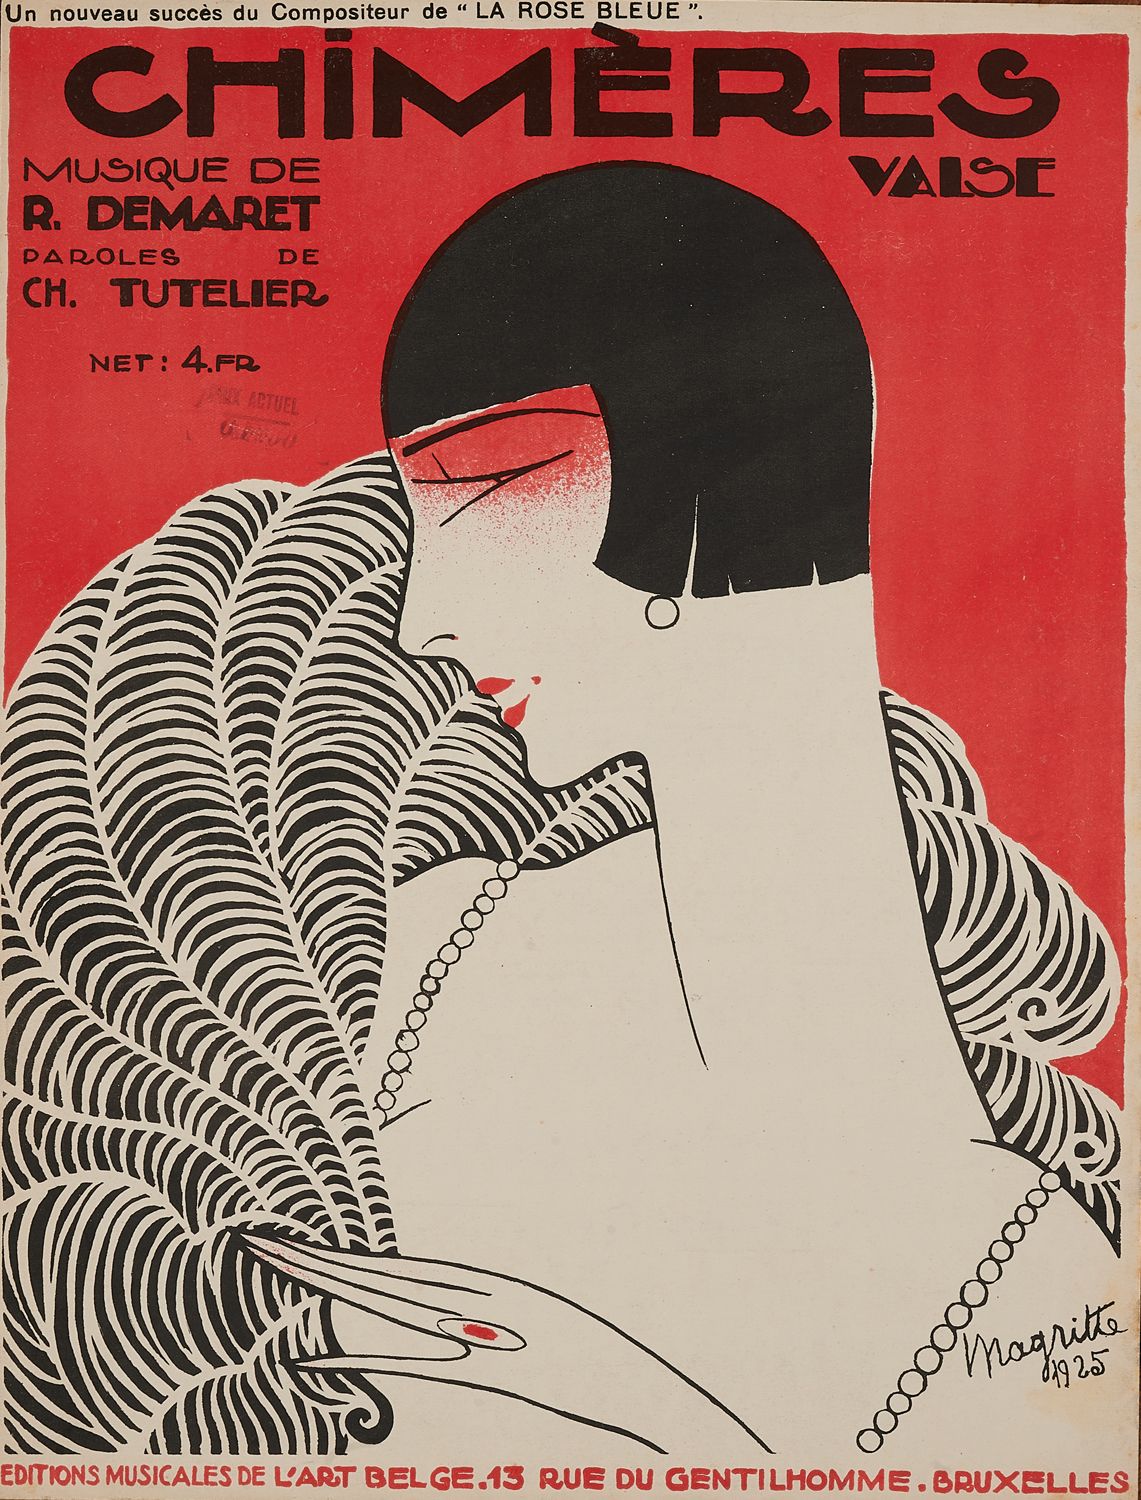 Null René MAGRITTE (1898-1967) 
CHIMERES valse de R. Demaret, 1925. 
Couverture &hellip;